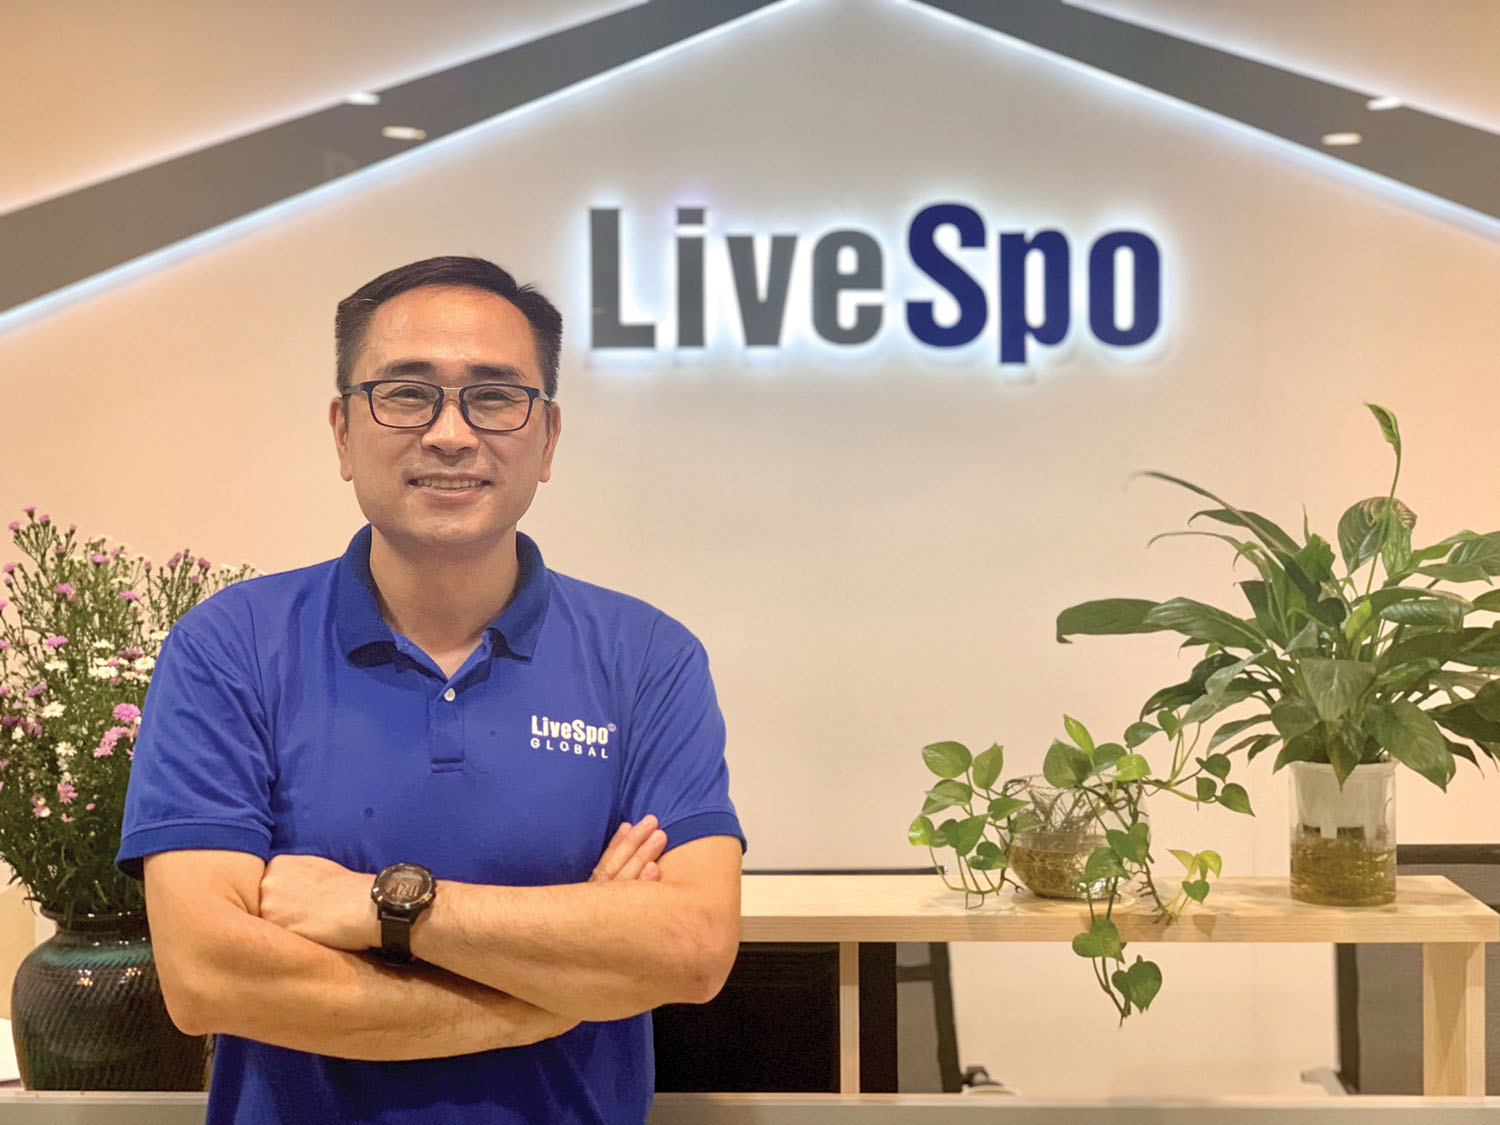 Doanh nhân Đặng Quốc Hưng, Giám đốc điều hành Livespo Pharma: Khát vọng về một tương lai không kháng sinh - ảnh 1